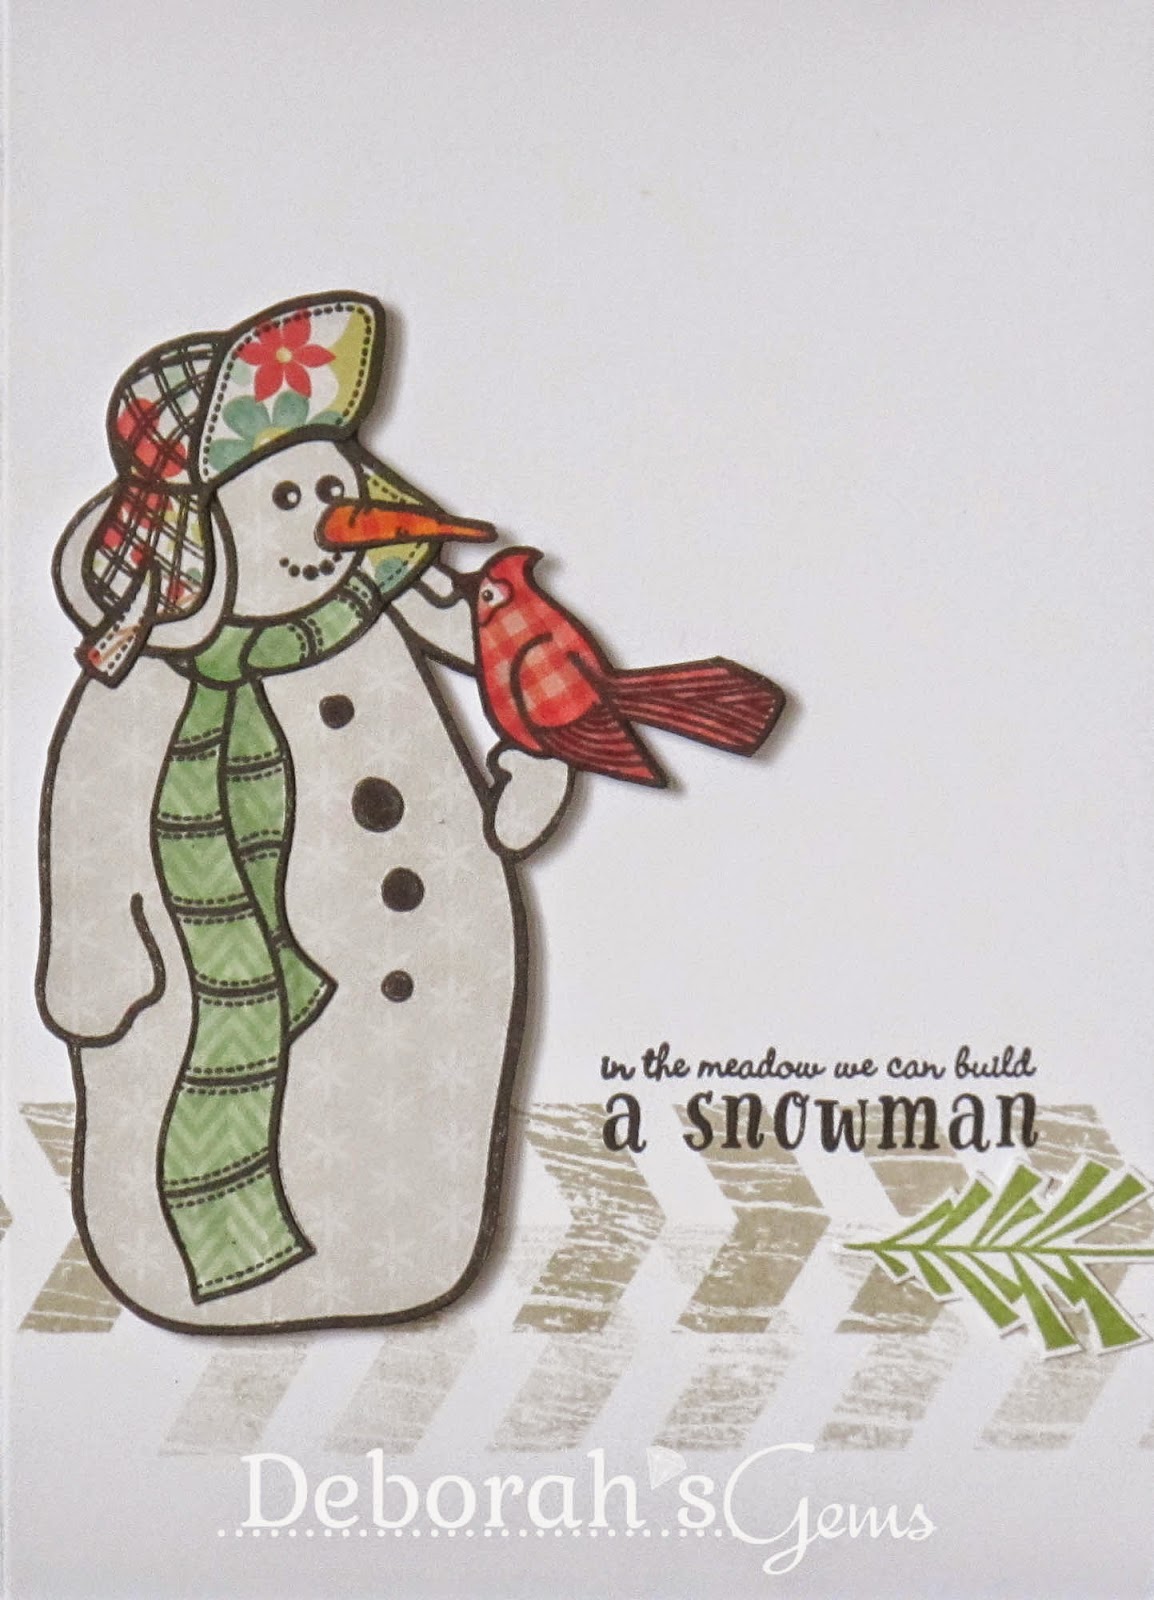 A Snowman - photo by Deborah Frings - Deborah's Gems